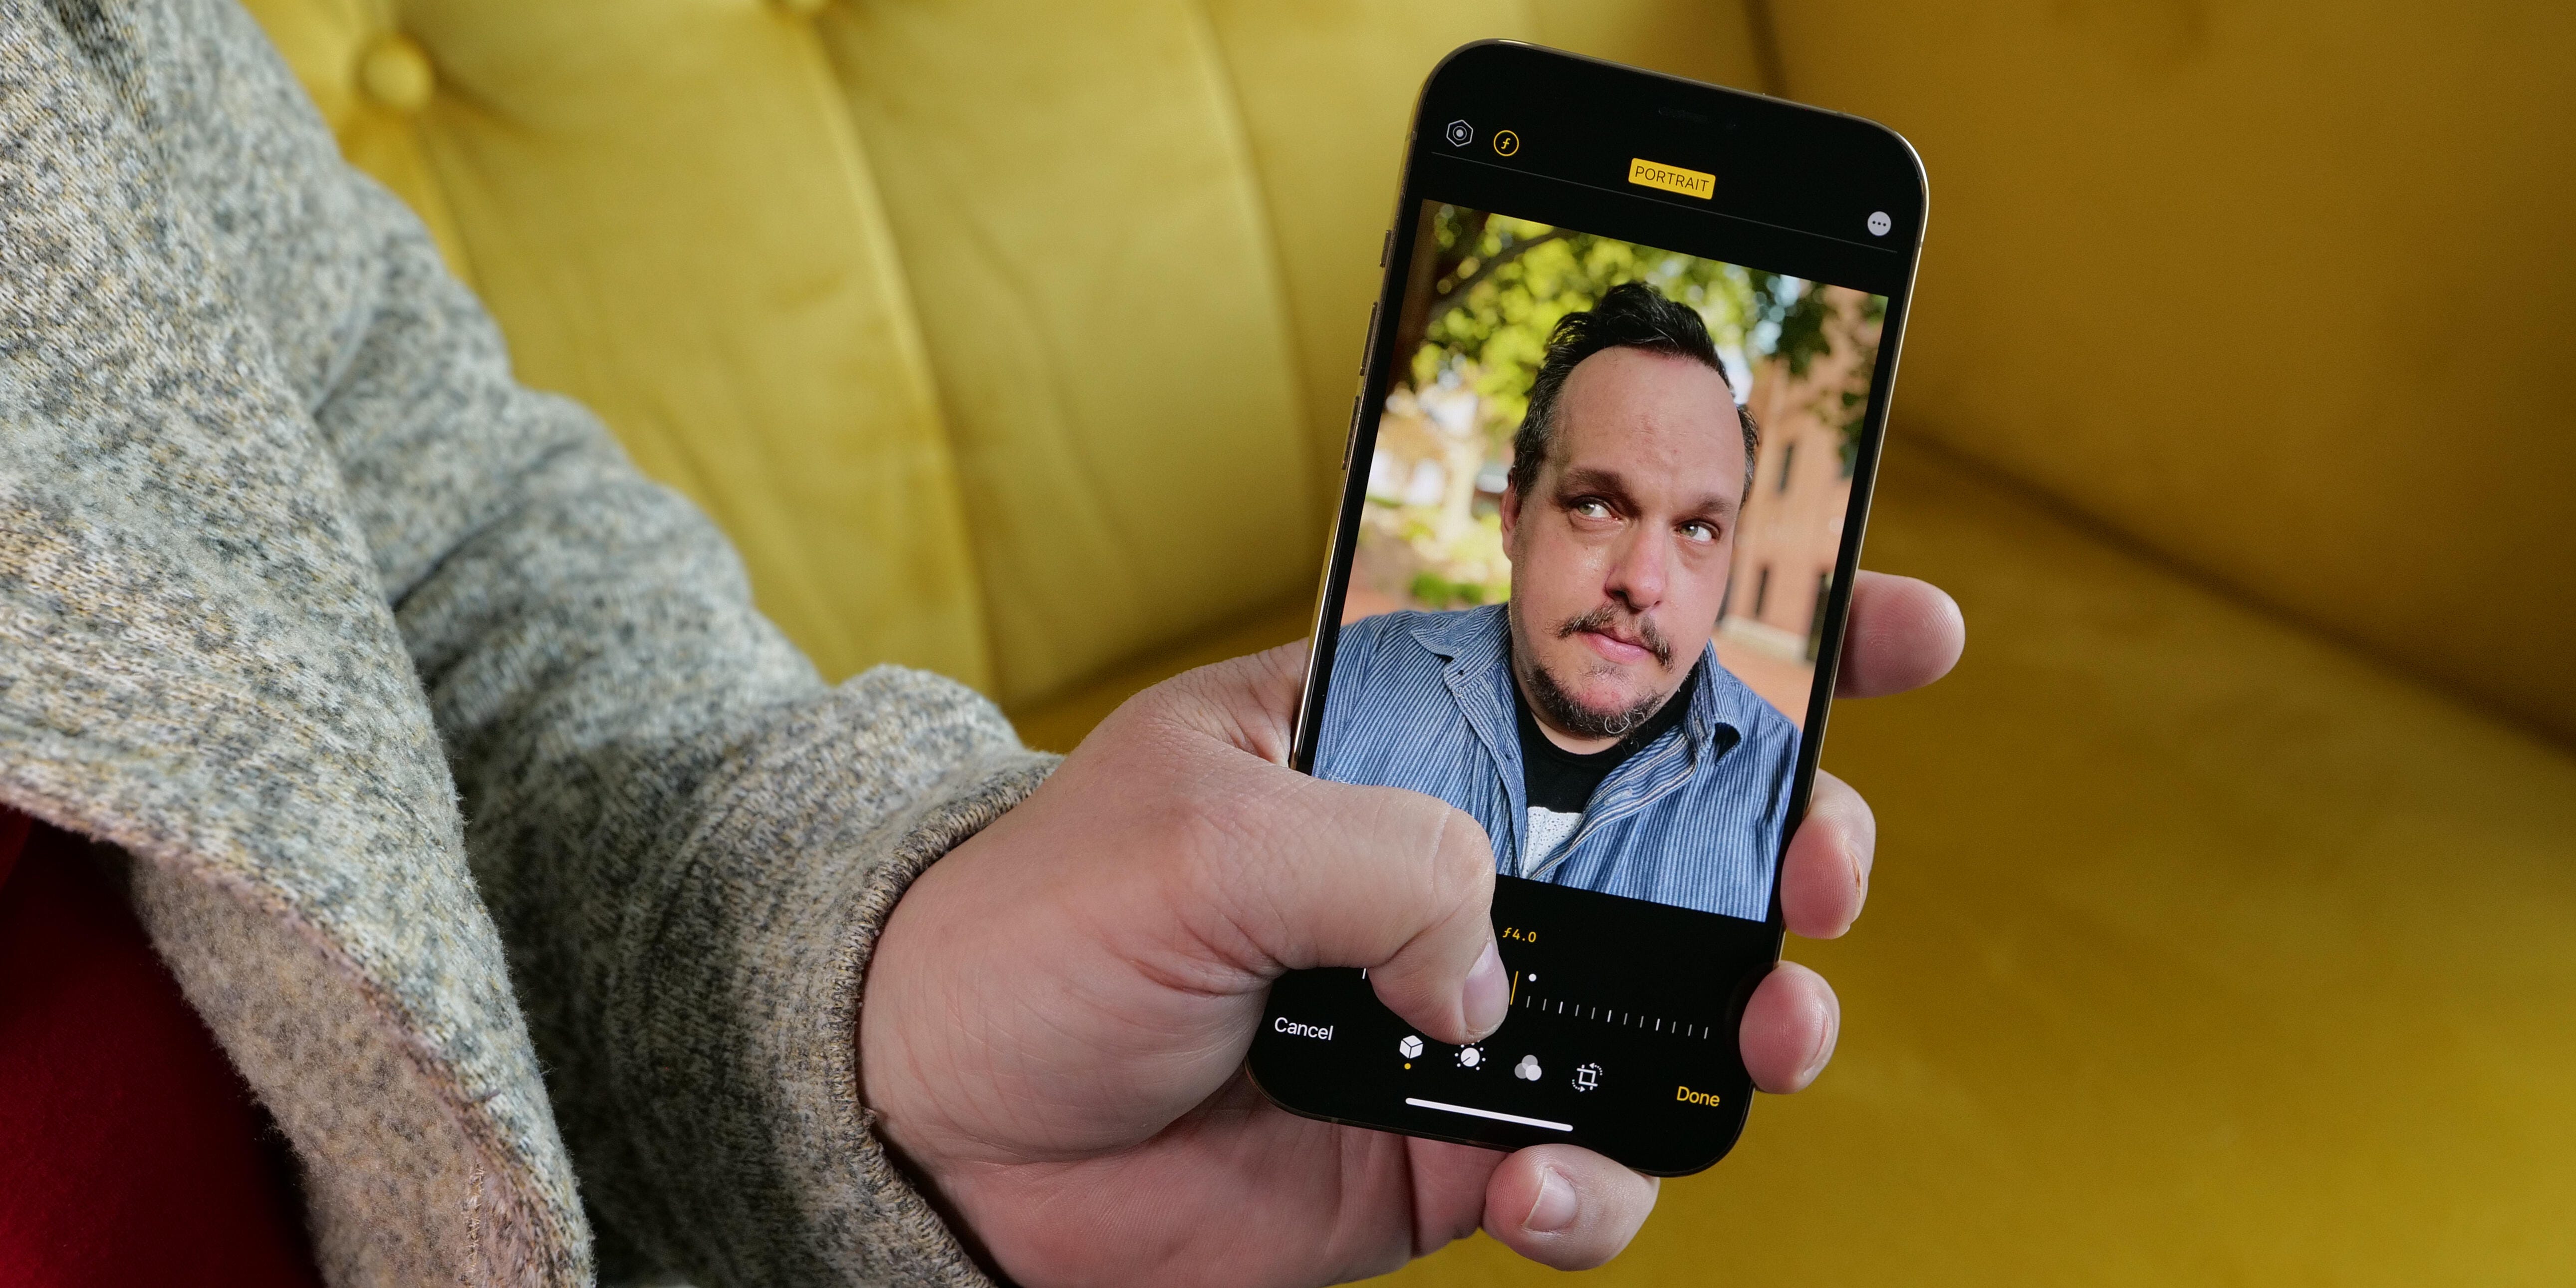 Chế độ chụp chân dung trên iPhone sẽ giúp cho bức ảnh của bạn trở nên chuyên nghiệp hơn bao giờ hết. Hãy thử qua tính năng này và khám phá sự khác biệt mà nó mang lại cho ảnh của bạn.